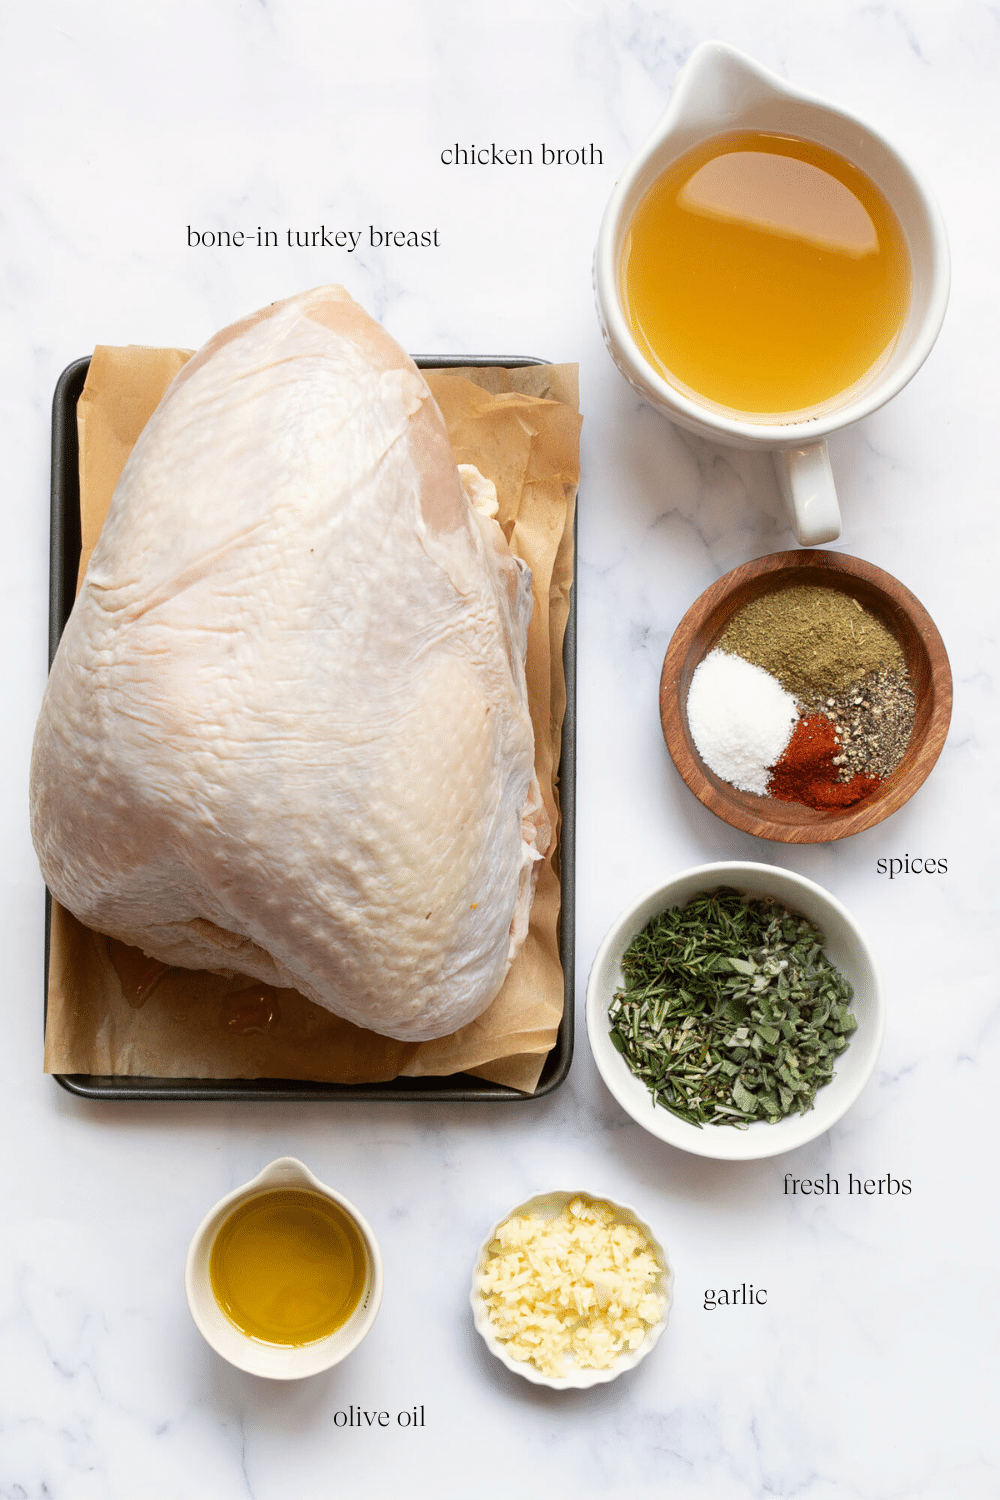 ingredients to make bone-in roasted turkey breast